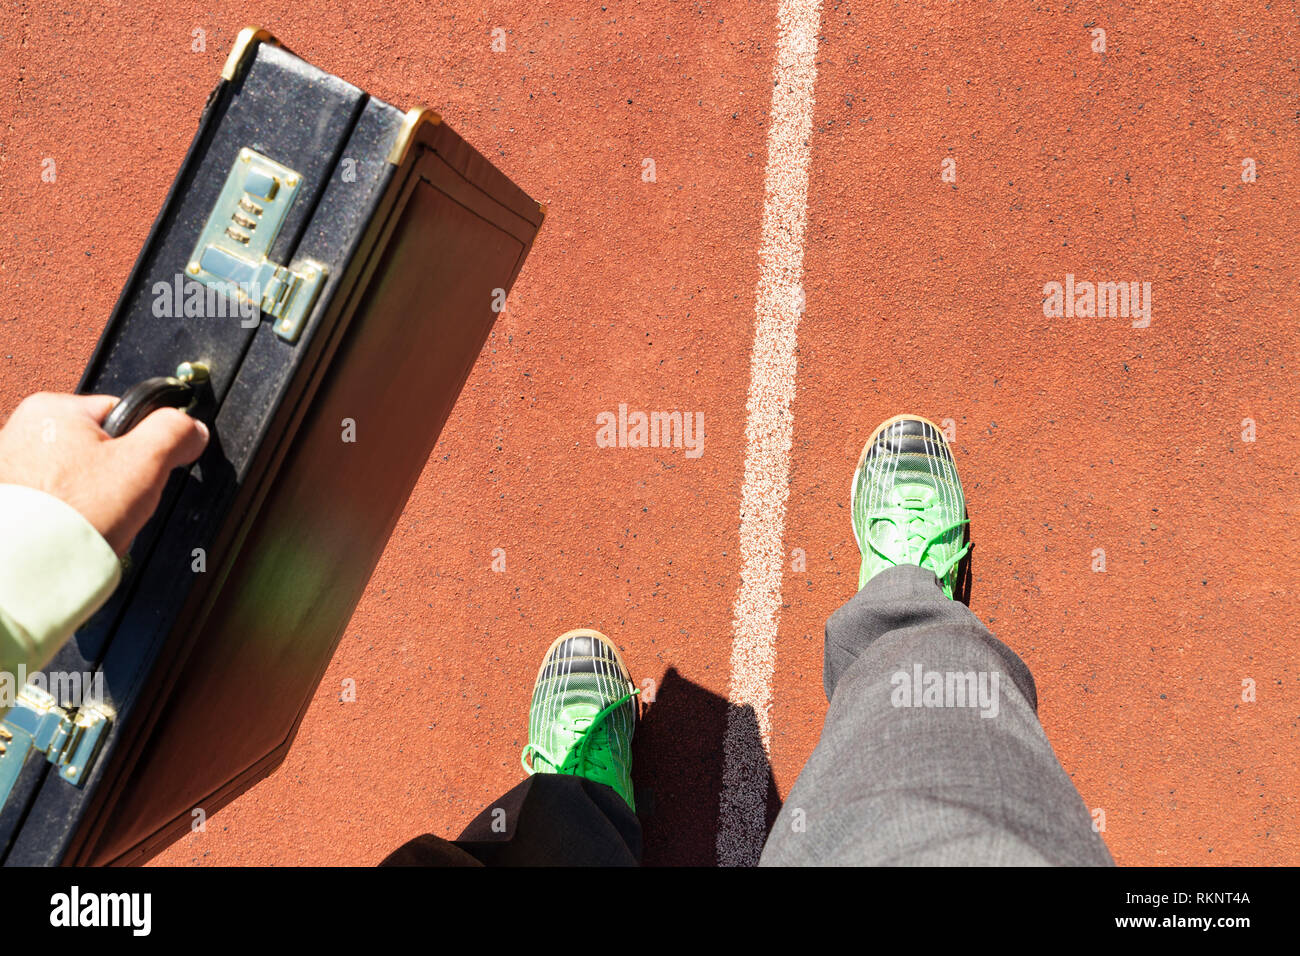 Un homme d'affaires en costume gris avec chemise verte, porte-documents noir et vert chaussures de course debout sur une piste de course. Banque D'Images